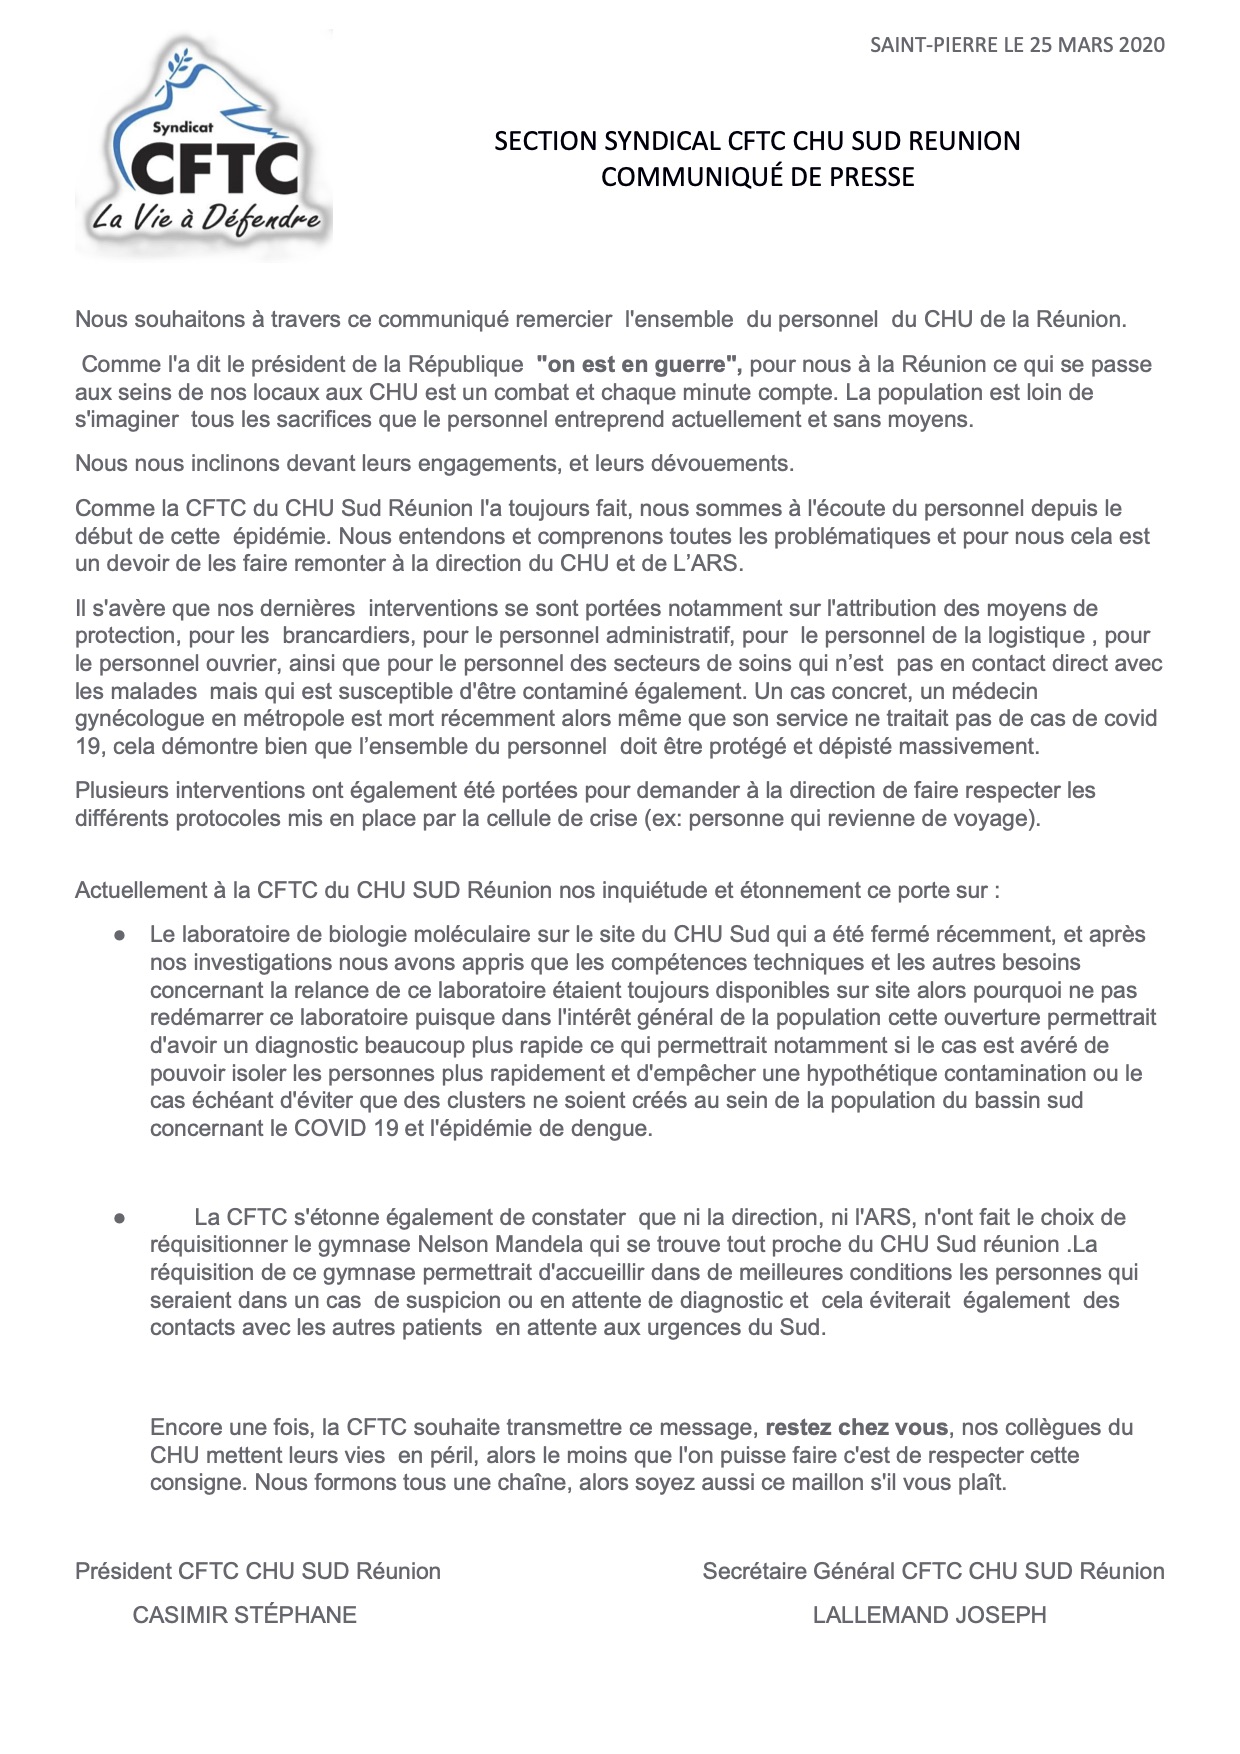 La CFTC CHU Sud réclame la mise à disposition du gymnase Nelson-Mandela pour le dépistage du covid